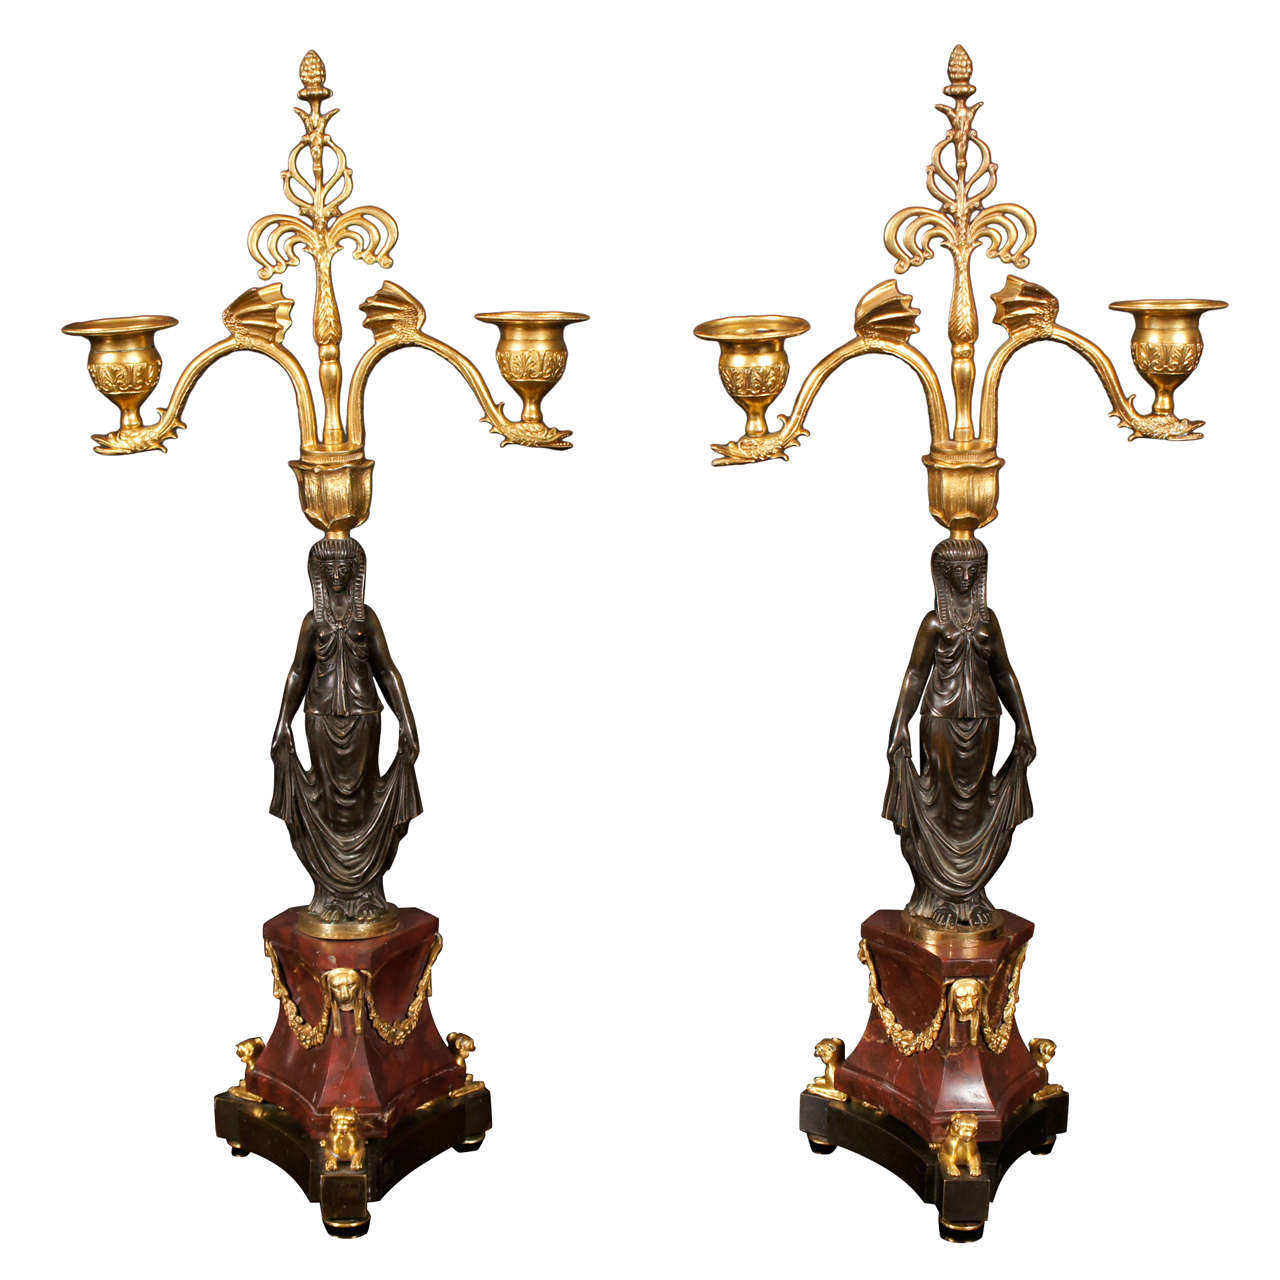 Zwei vergoldete und patinierte Bronzekandelaber mit zwei Lichtern aus dem 19. Jahrhundert